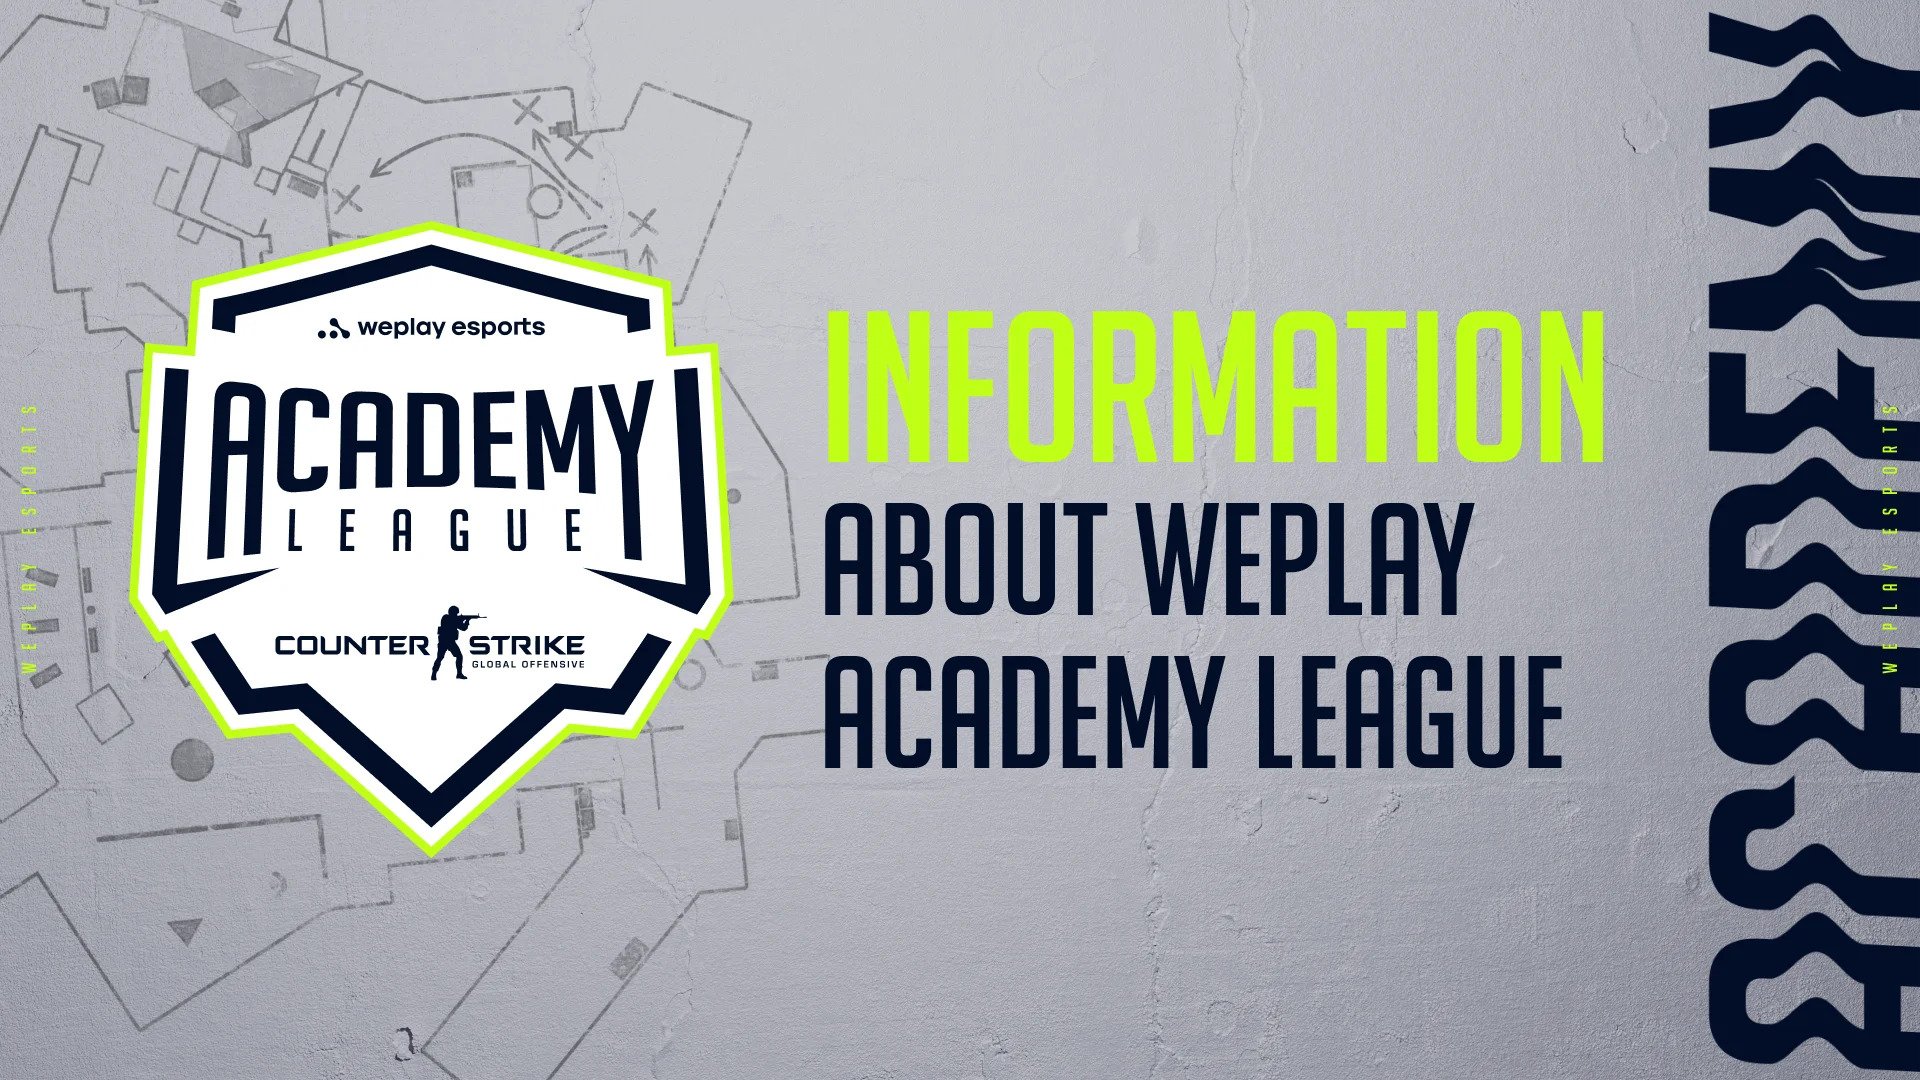 WePlay Academy League kvůli válce přerušuje aktivity: Bezpečnost zaměstnanců má nejvyšší prioritu